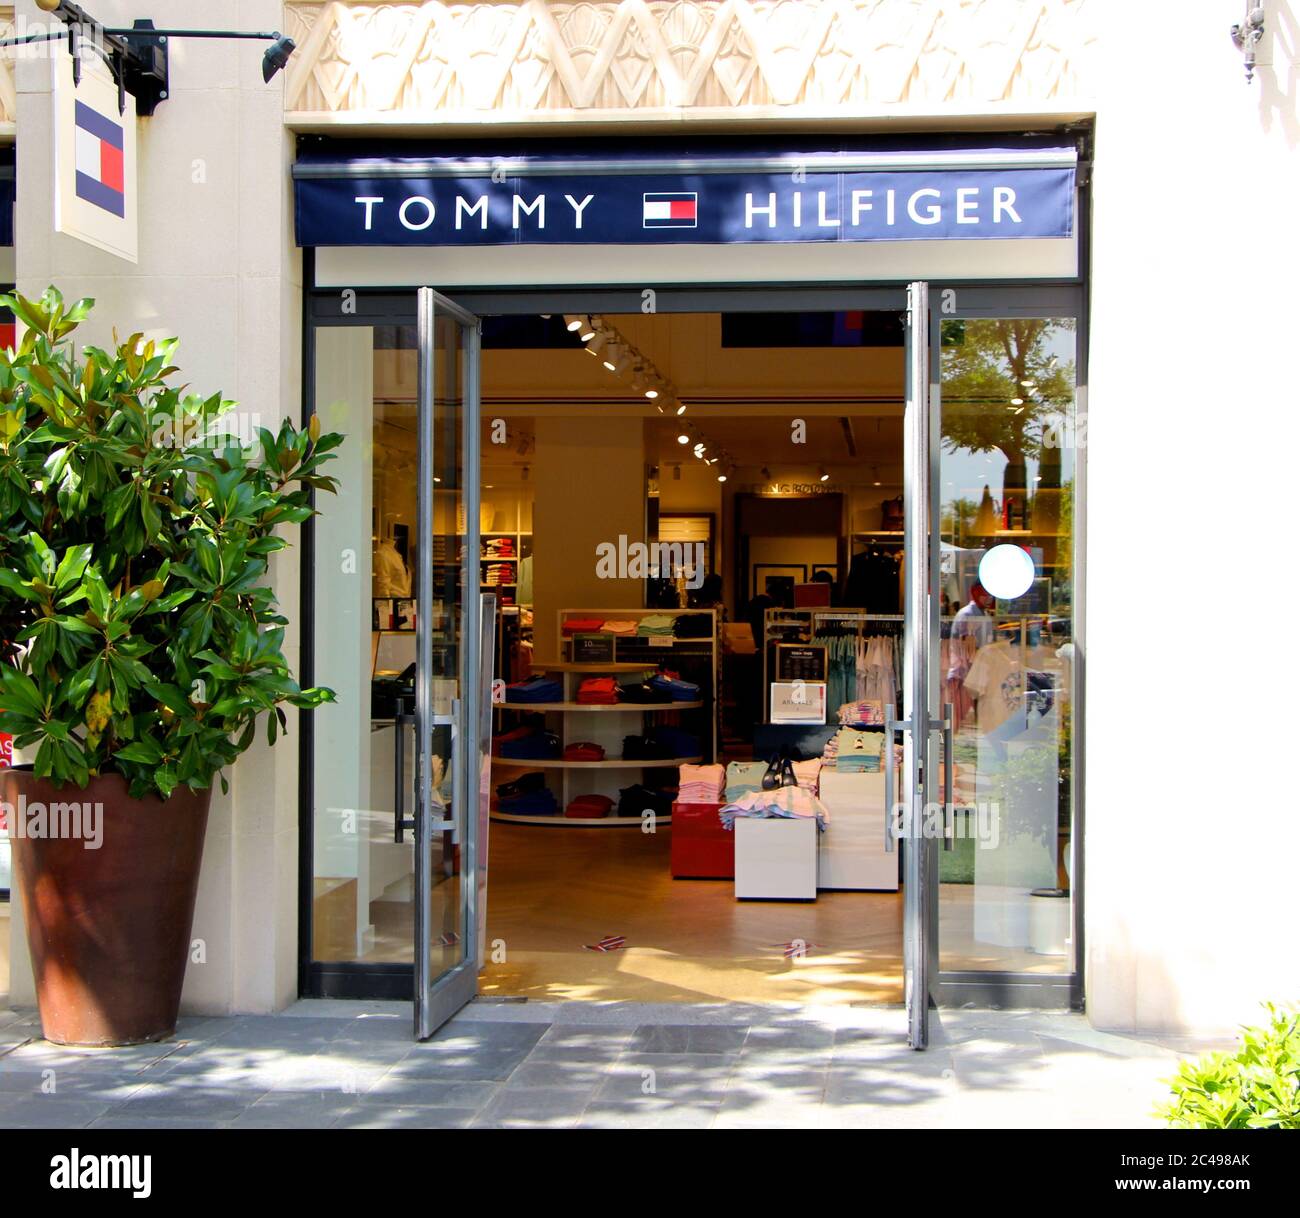 Tommy hilfiger shop sign fotografías e imágenes de alta resolución - Página 2 Alamy